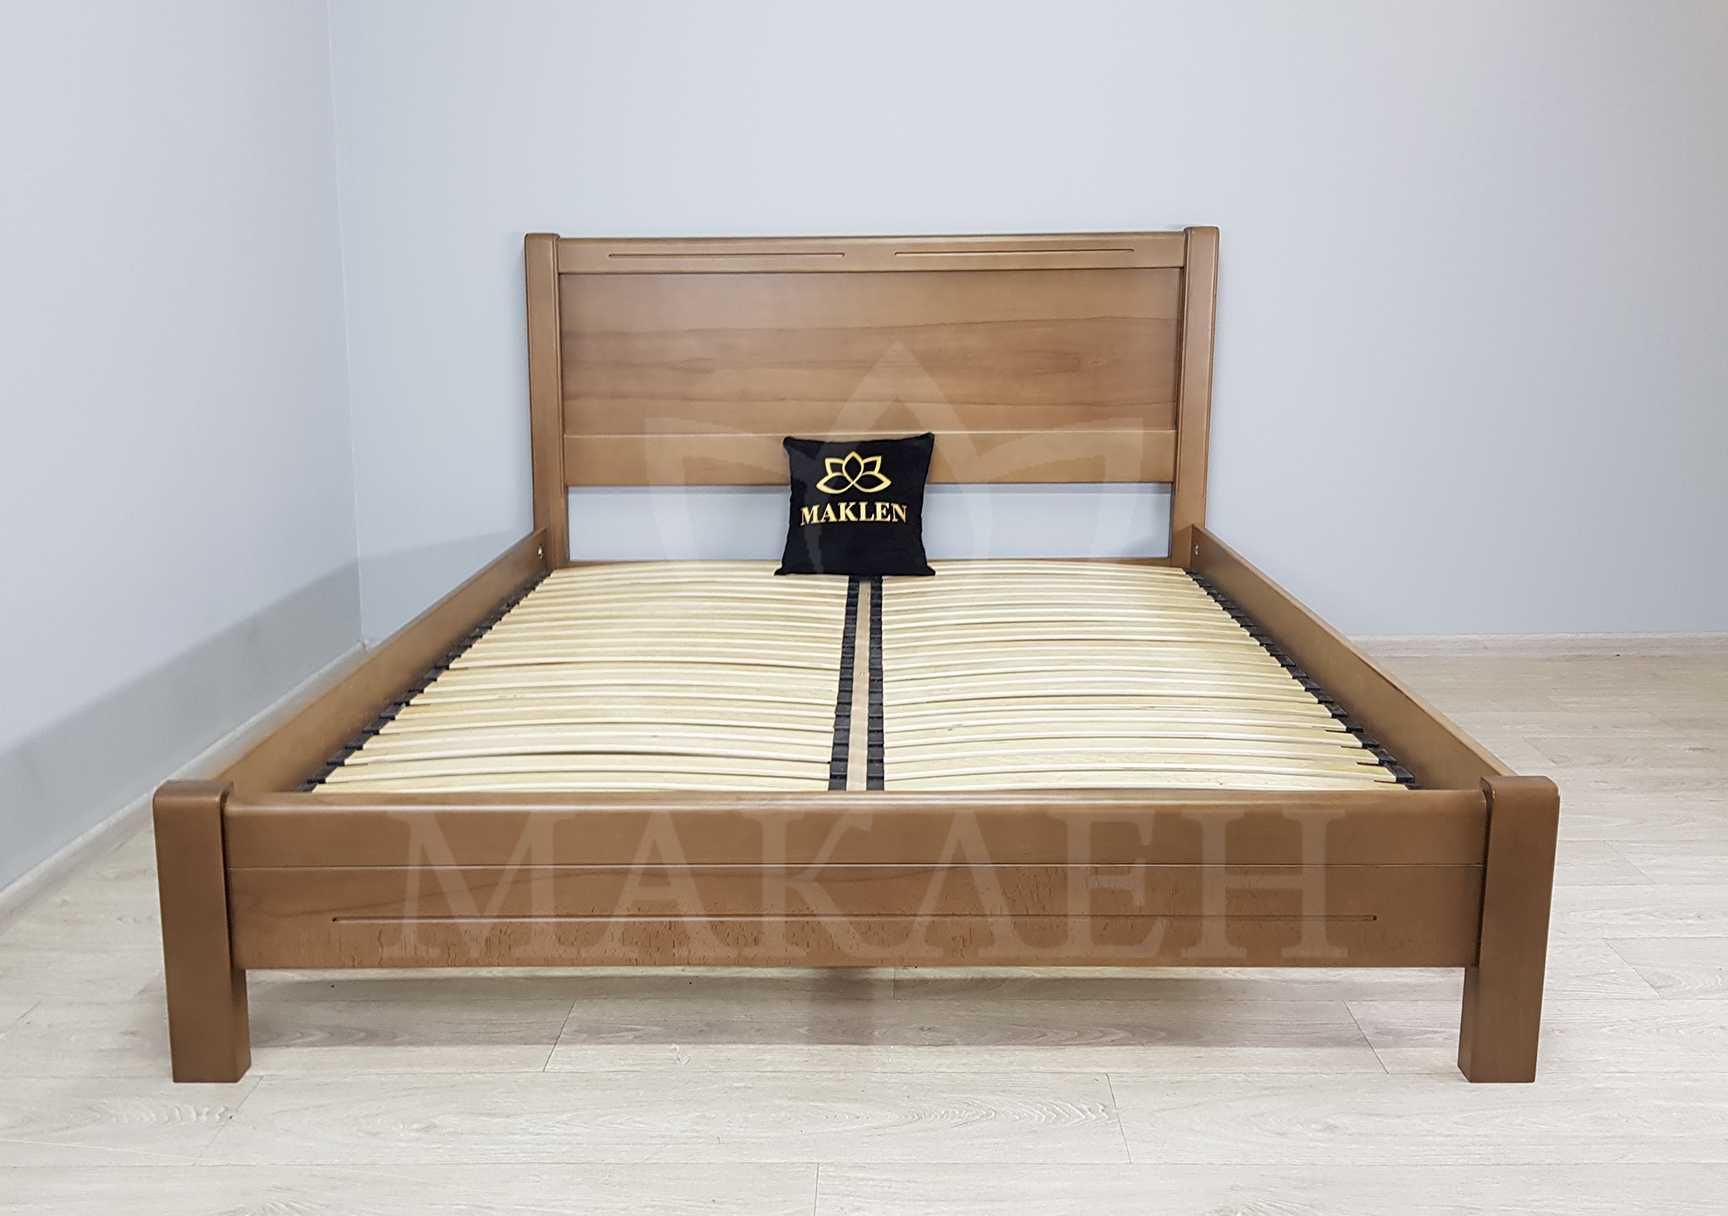 Двоспальне дерев'яне ліжко з масиву бука